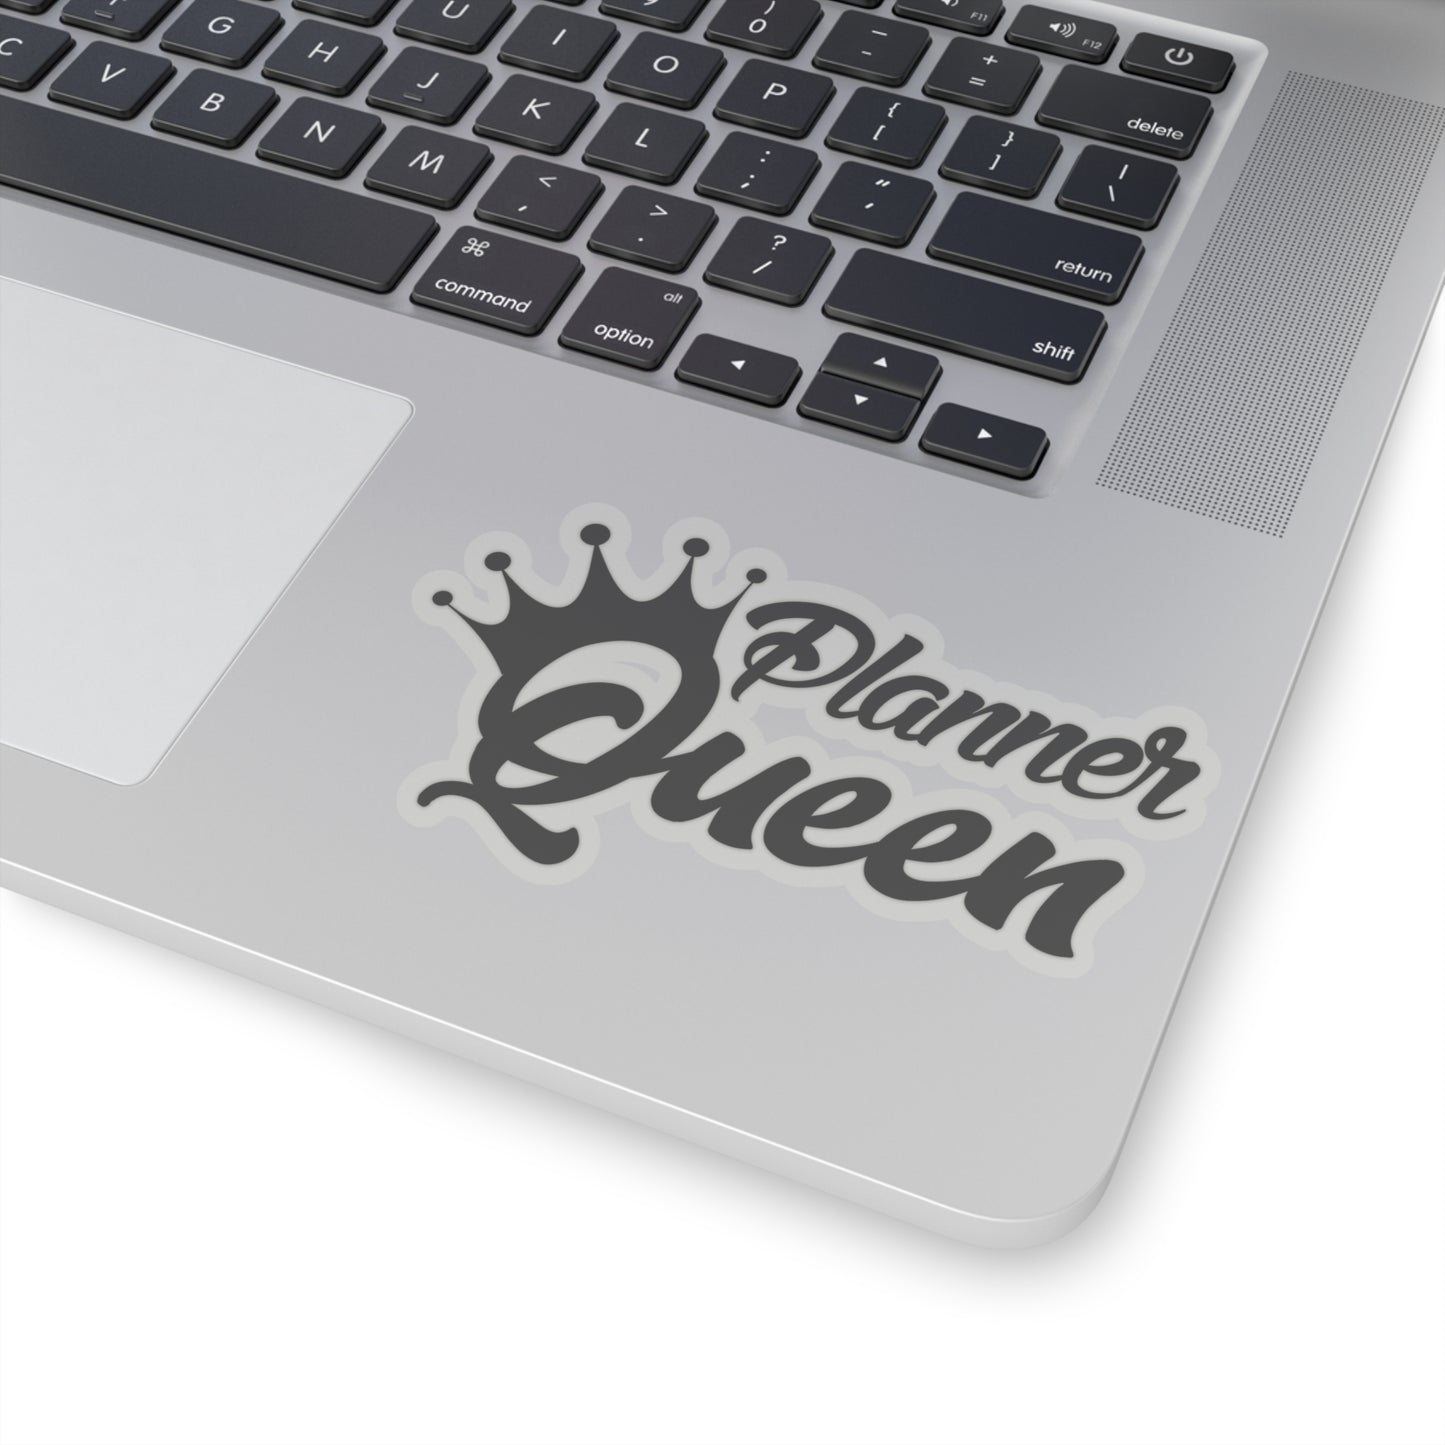 Planner Queen Kiss-Cut Stickers